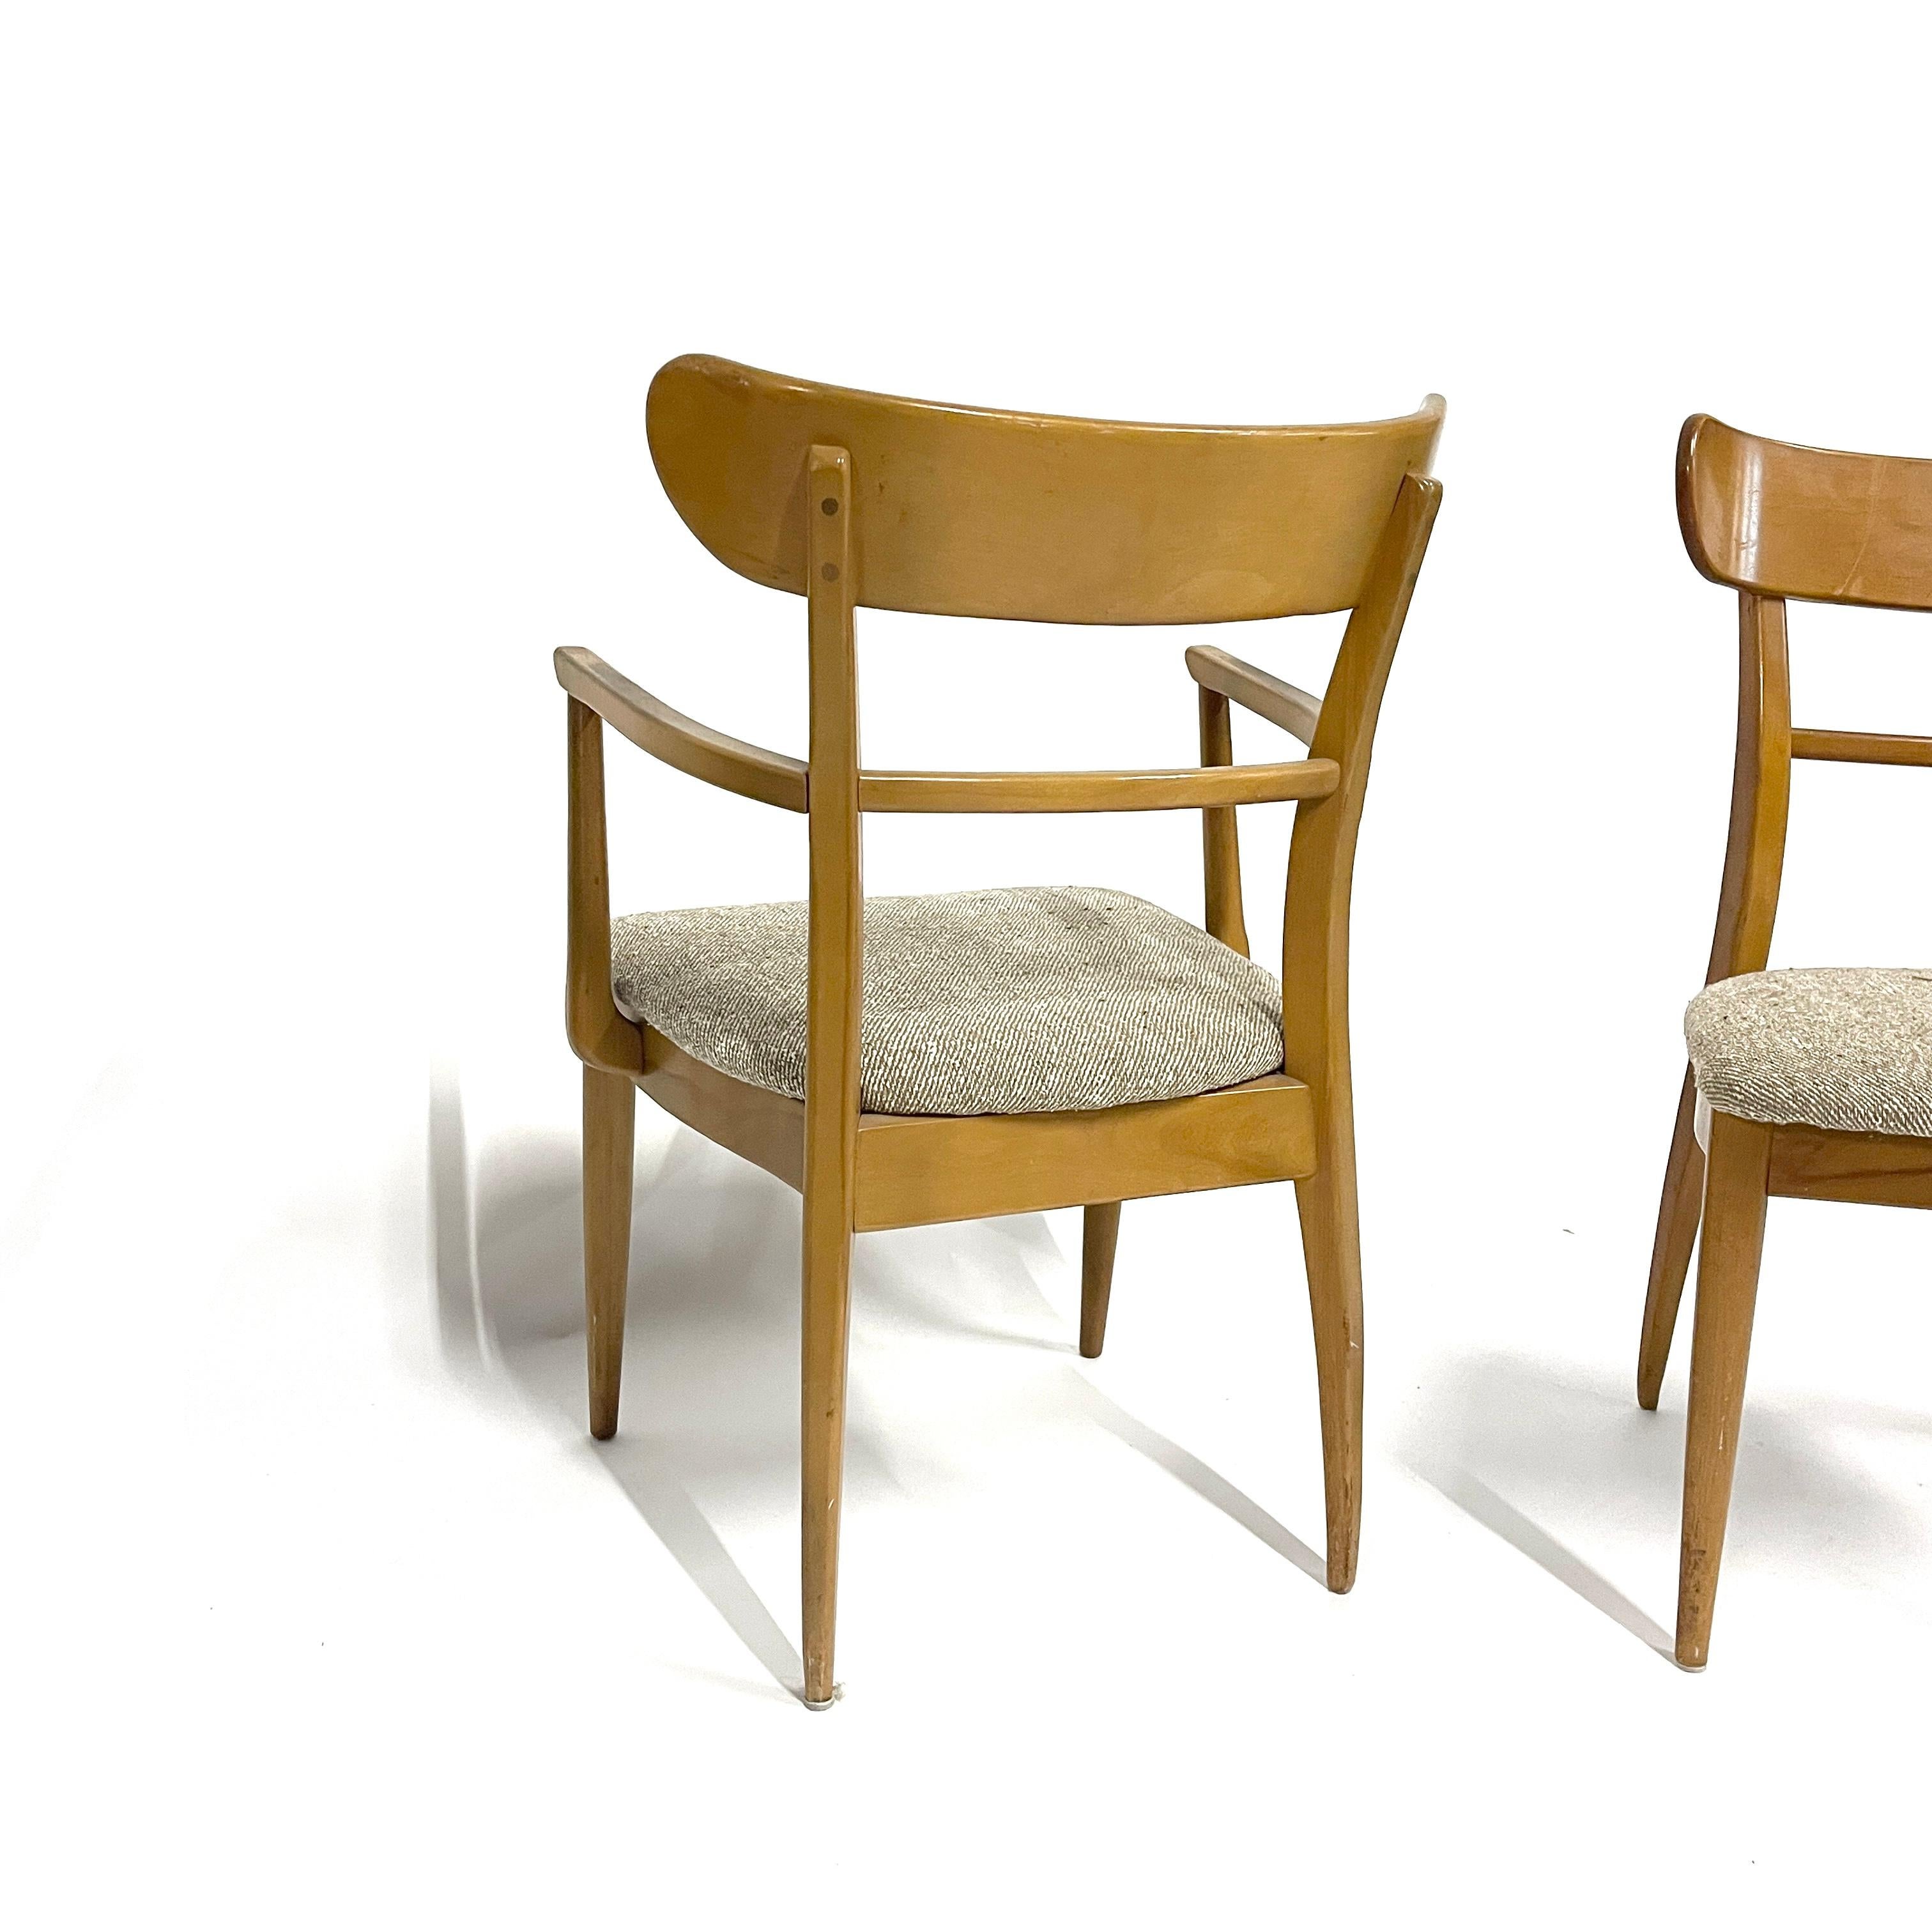 Wunderschöne Stühle aus massivem Bergahorn, hergestellt von Cushman of Vermont. Diese Stühle sind recht selten und gehören zu einer kleinen Serie, die von Cushman unter dem Namen 